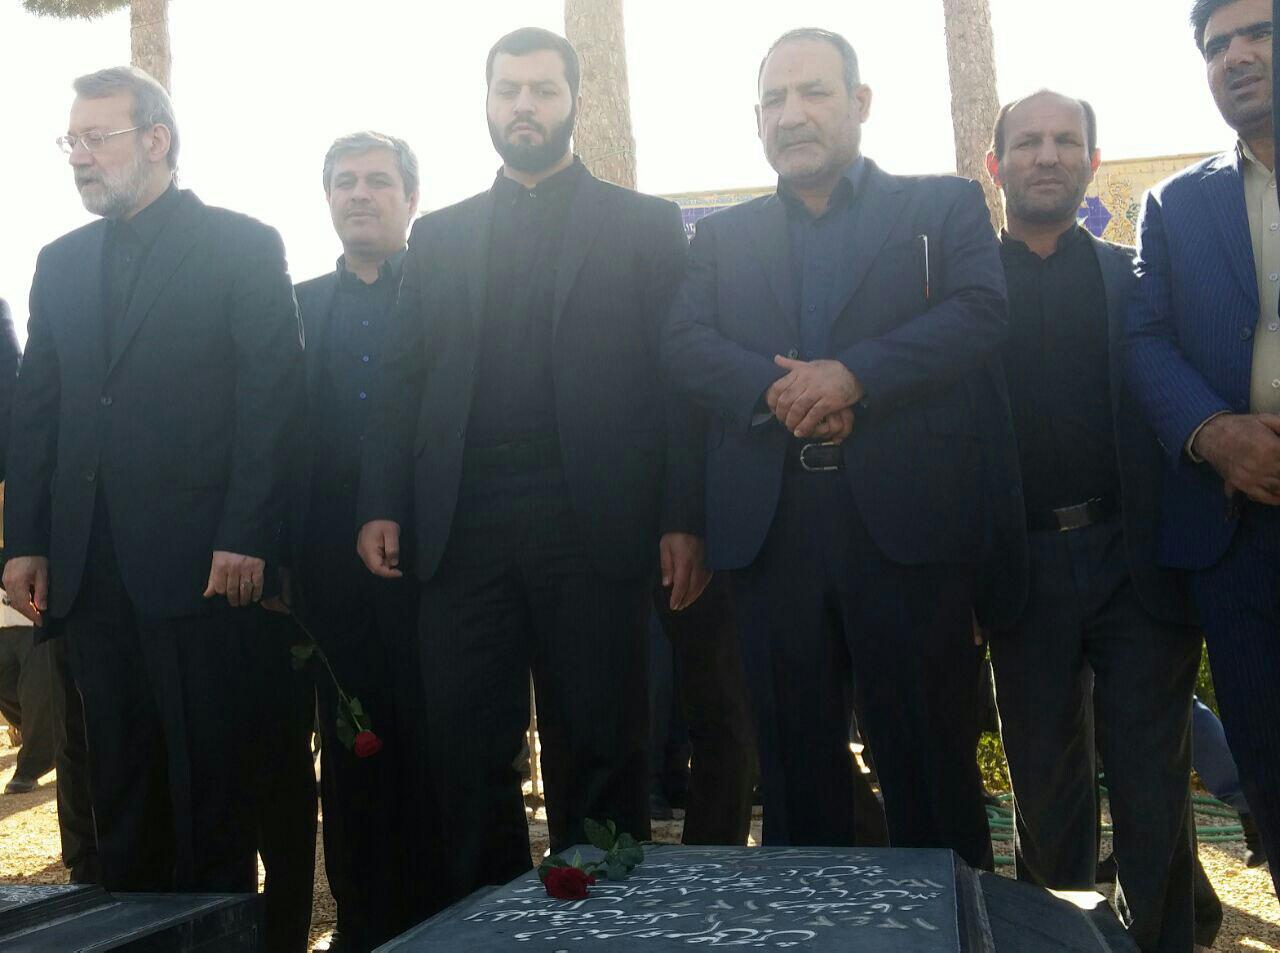 لاریجانی در یاسوج /دیدار فرمانداران چهار شهرستان کهگیلویه بزرگ با لاریجانی در دهدشت + تصاویر